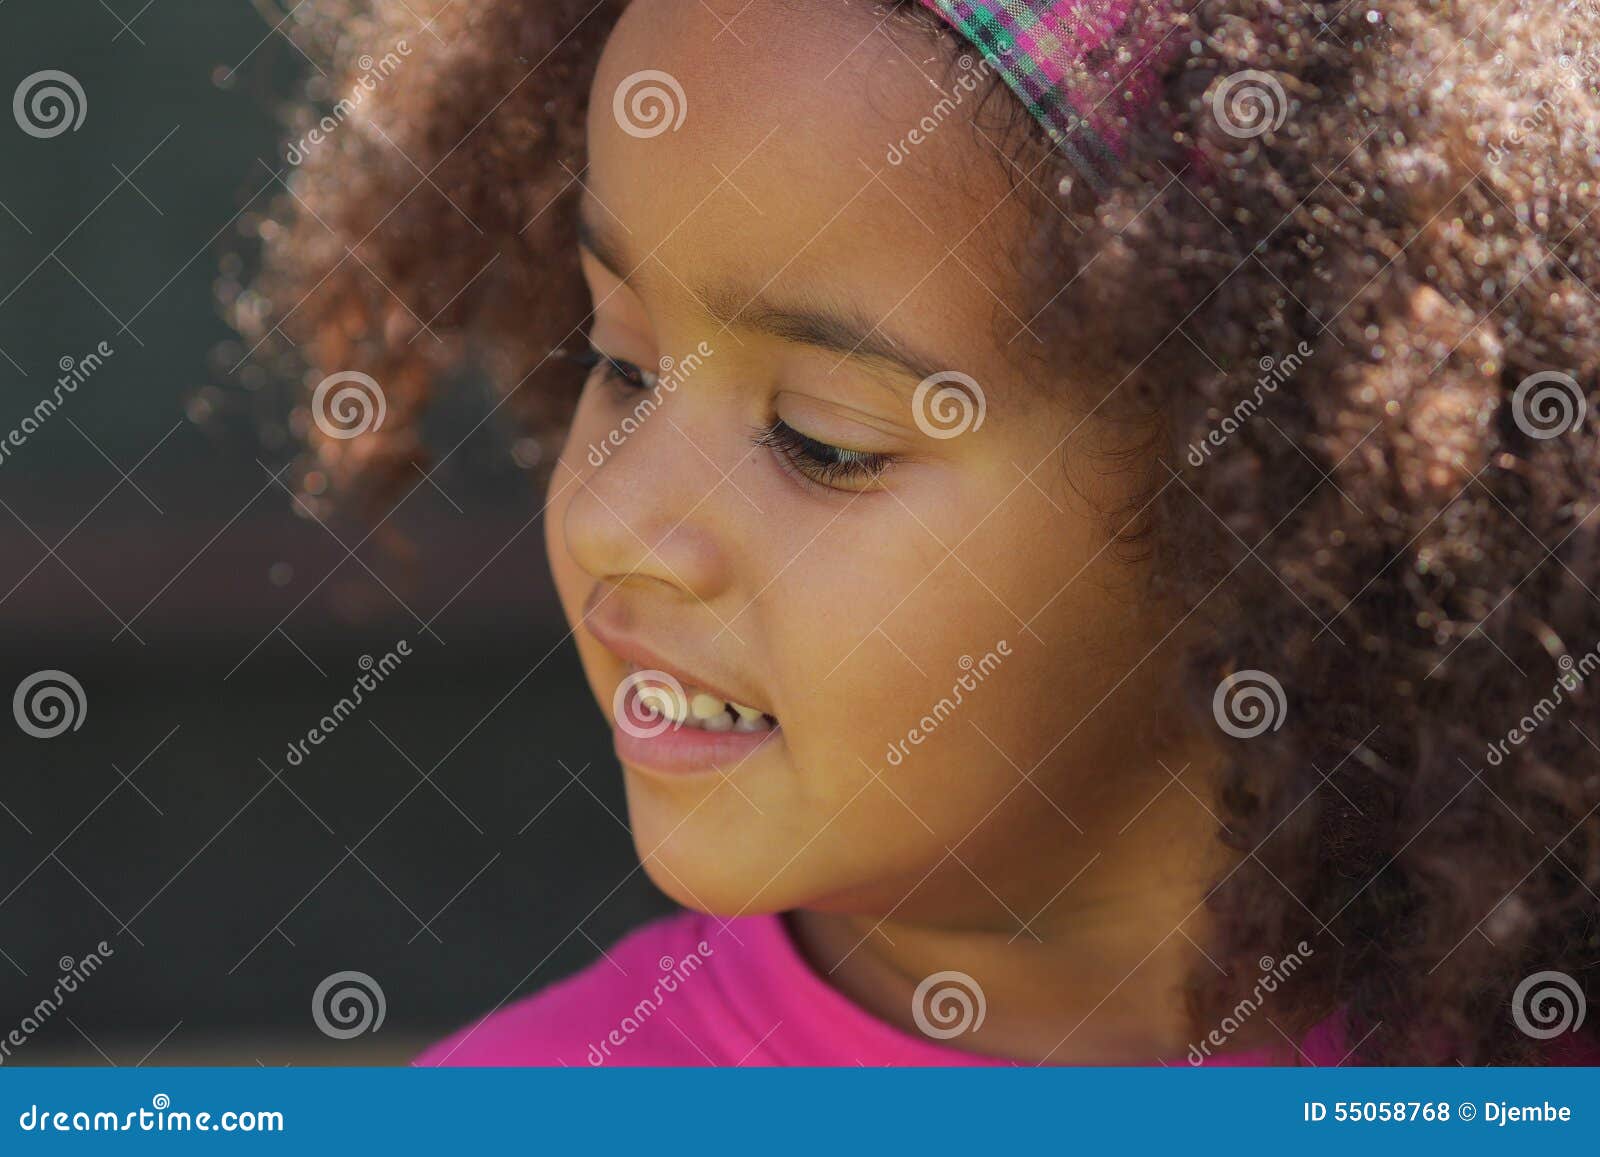 Afrikanische Kinder Stockfoto Bild Von Kinder Afrikanische 55058768